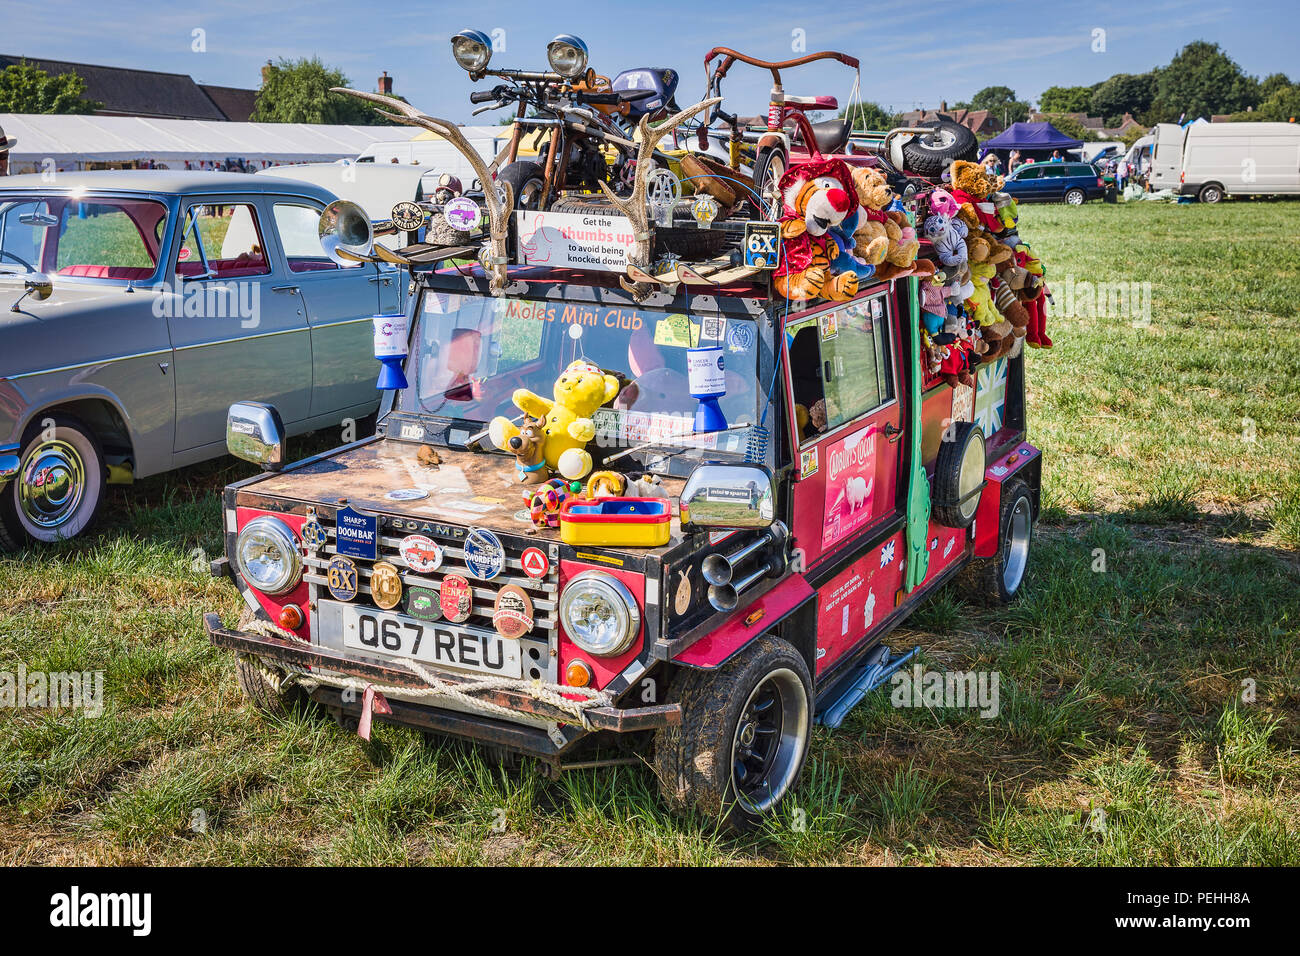 Ein urkomisch Ausstellung in einem Jahrgang countgry Messe in Wiltshire England Großbritannien mit einer alten Kit Car geschmückt mit unzähligen Kinder Spielzeug und ephemera Stockfoto